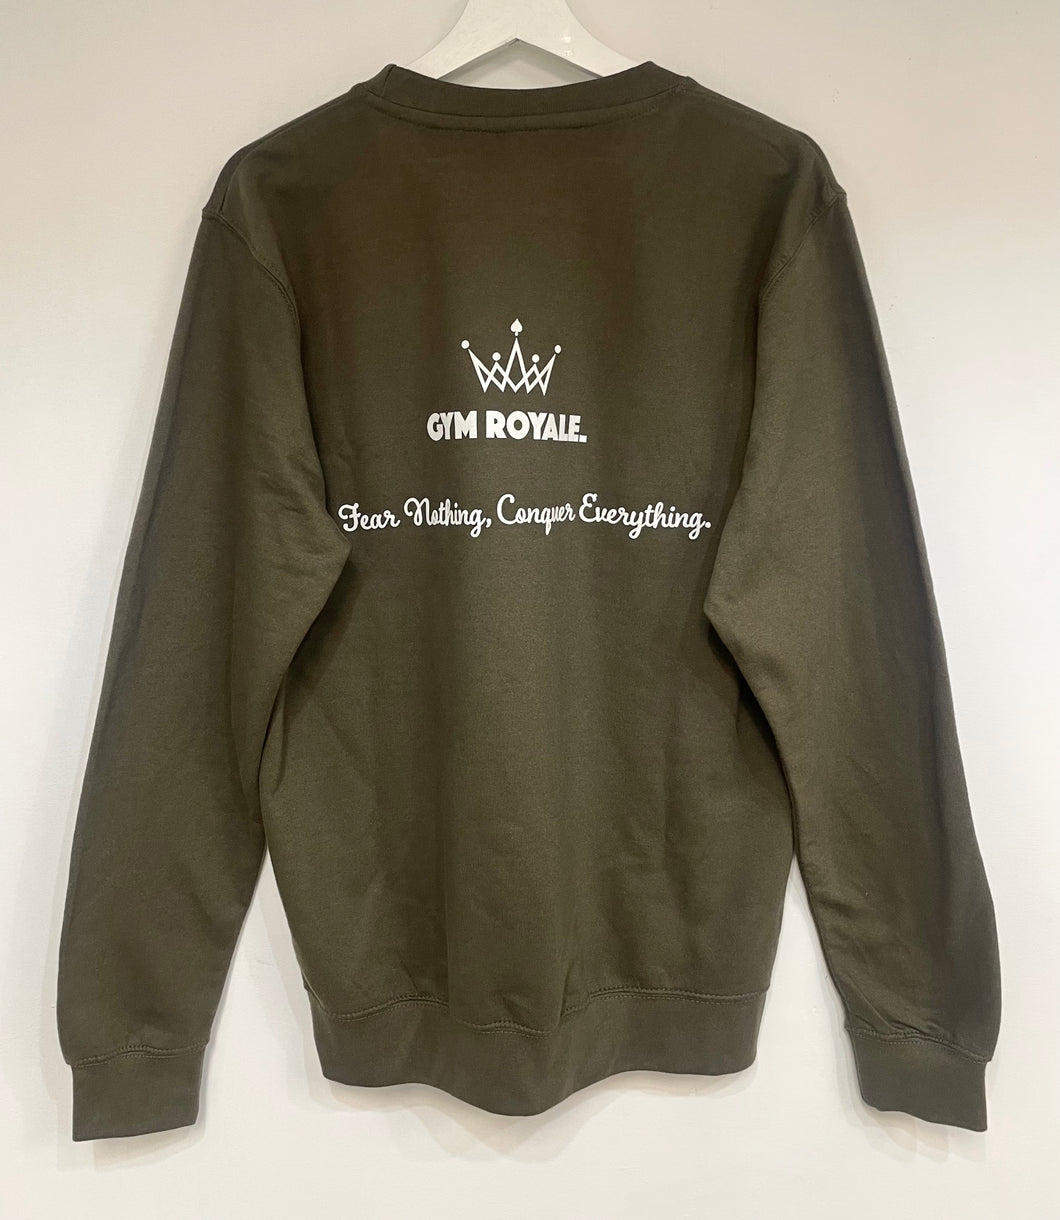 Gym Royale® Conquer Everything - Sweatshirt - White on Khaki